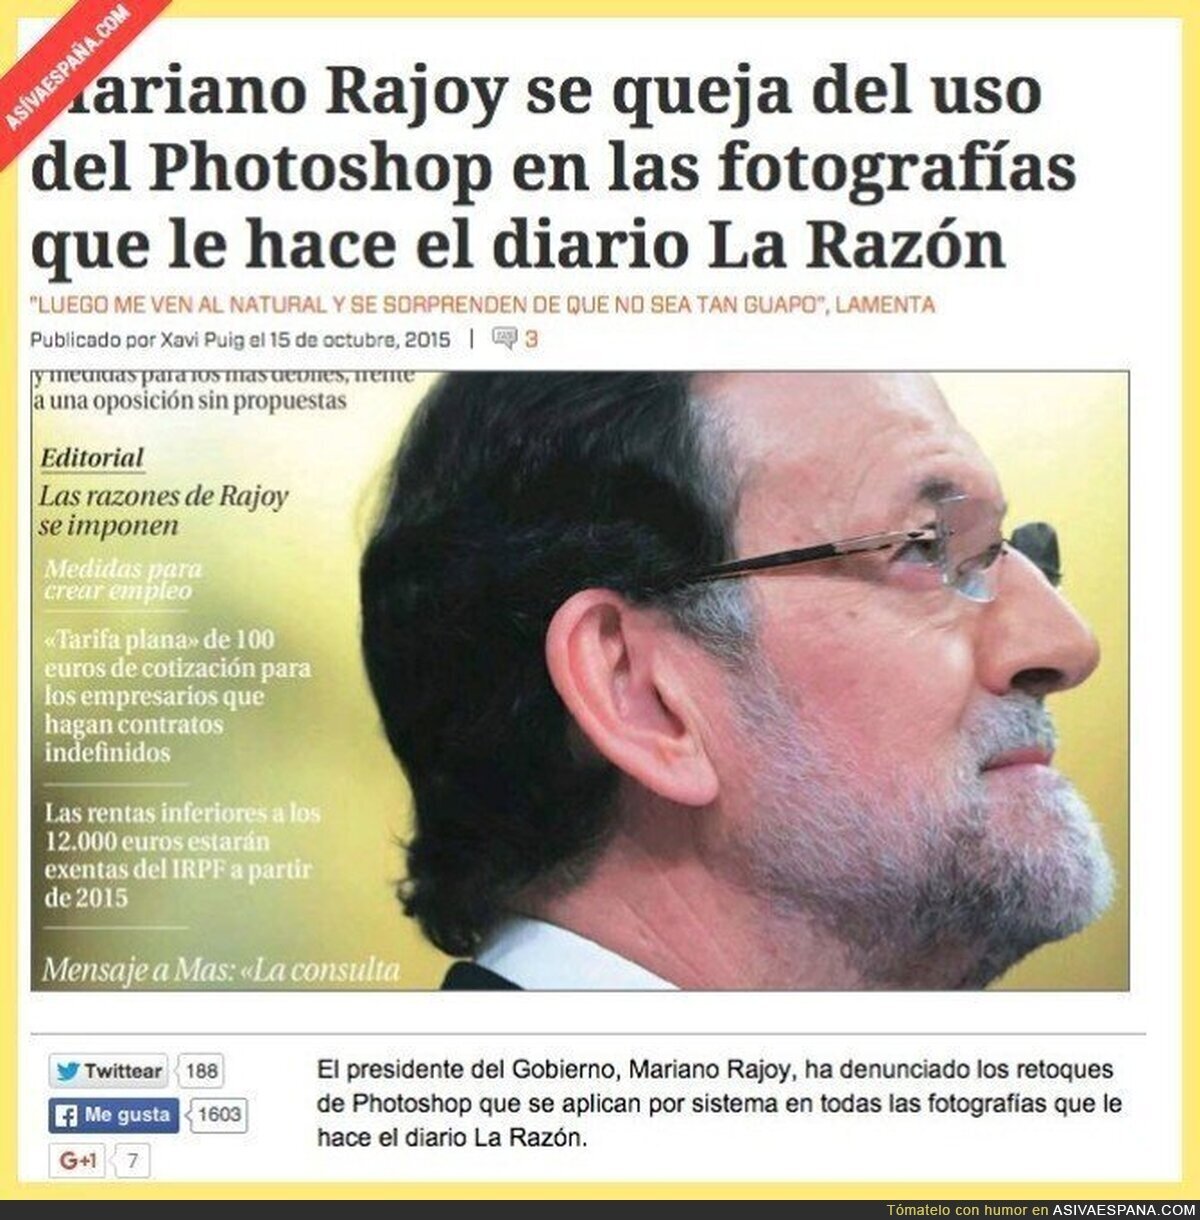 La razón pelotea tanto a Rajoy que esta noticia podría ser real